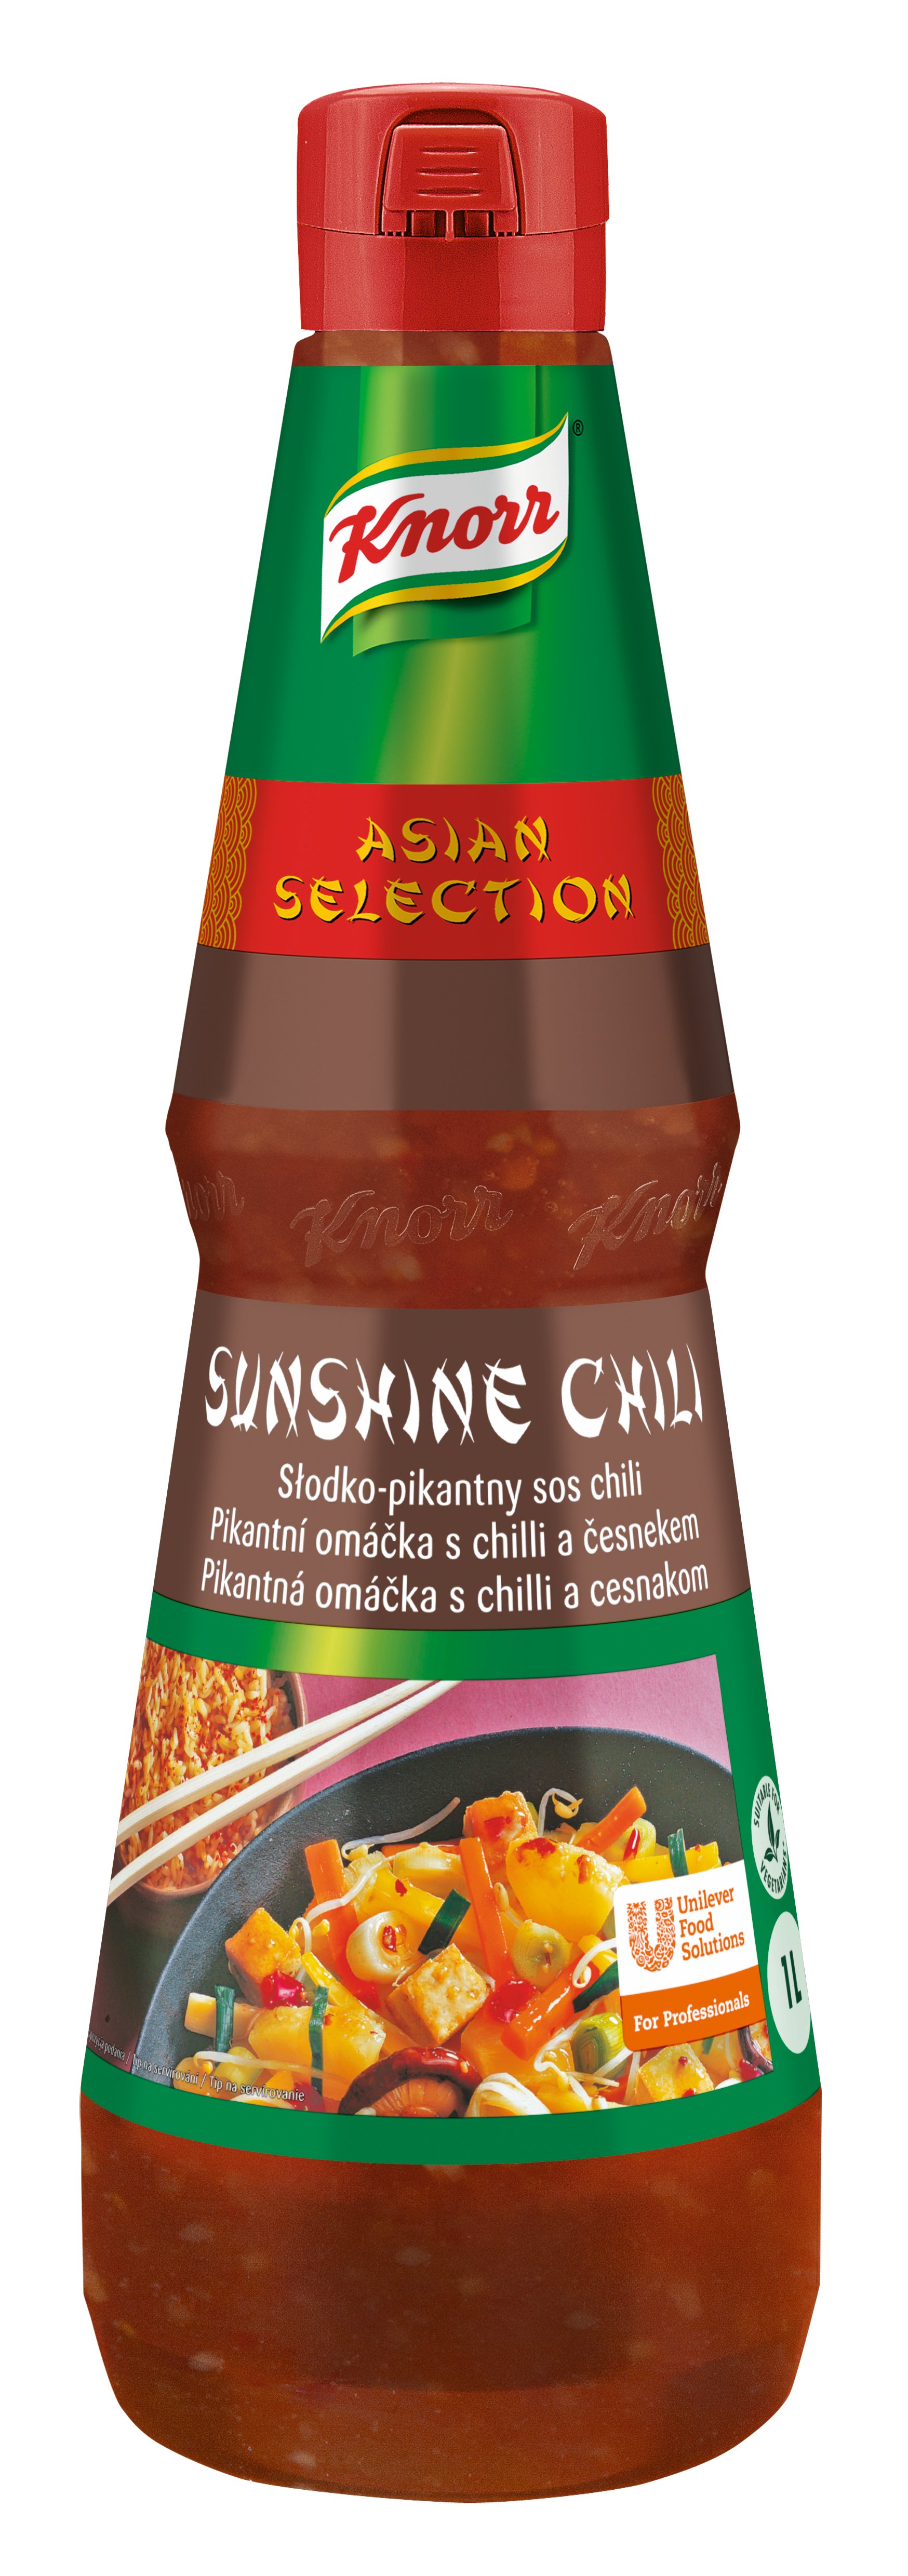 Knorr Sunshine Chilli pikantná omáčka 1L - 